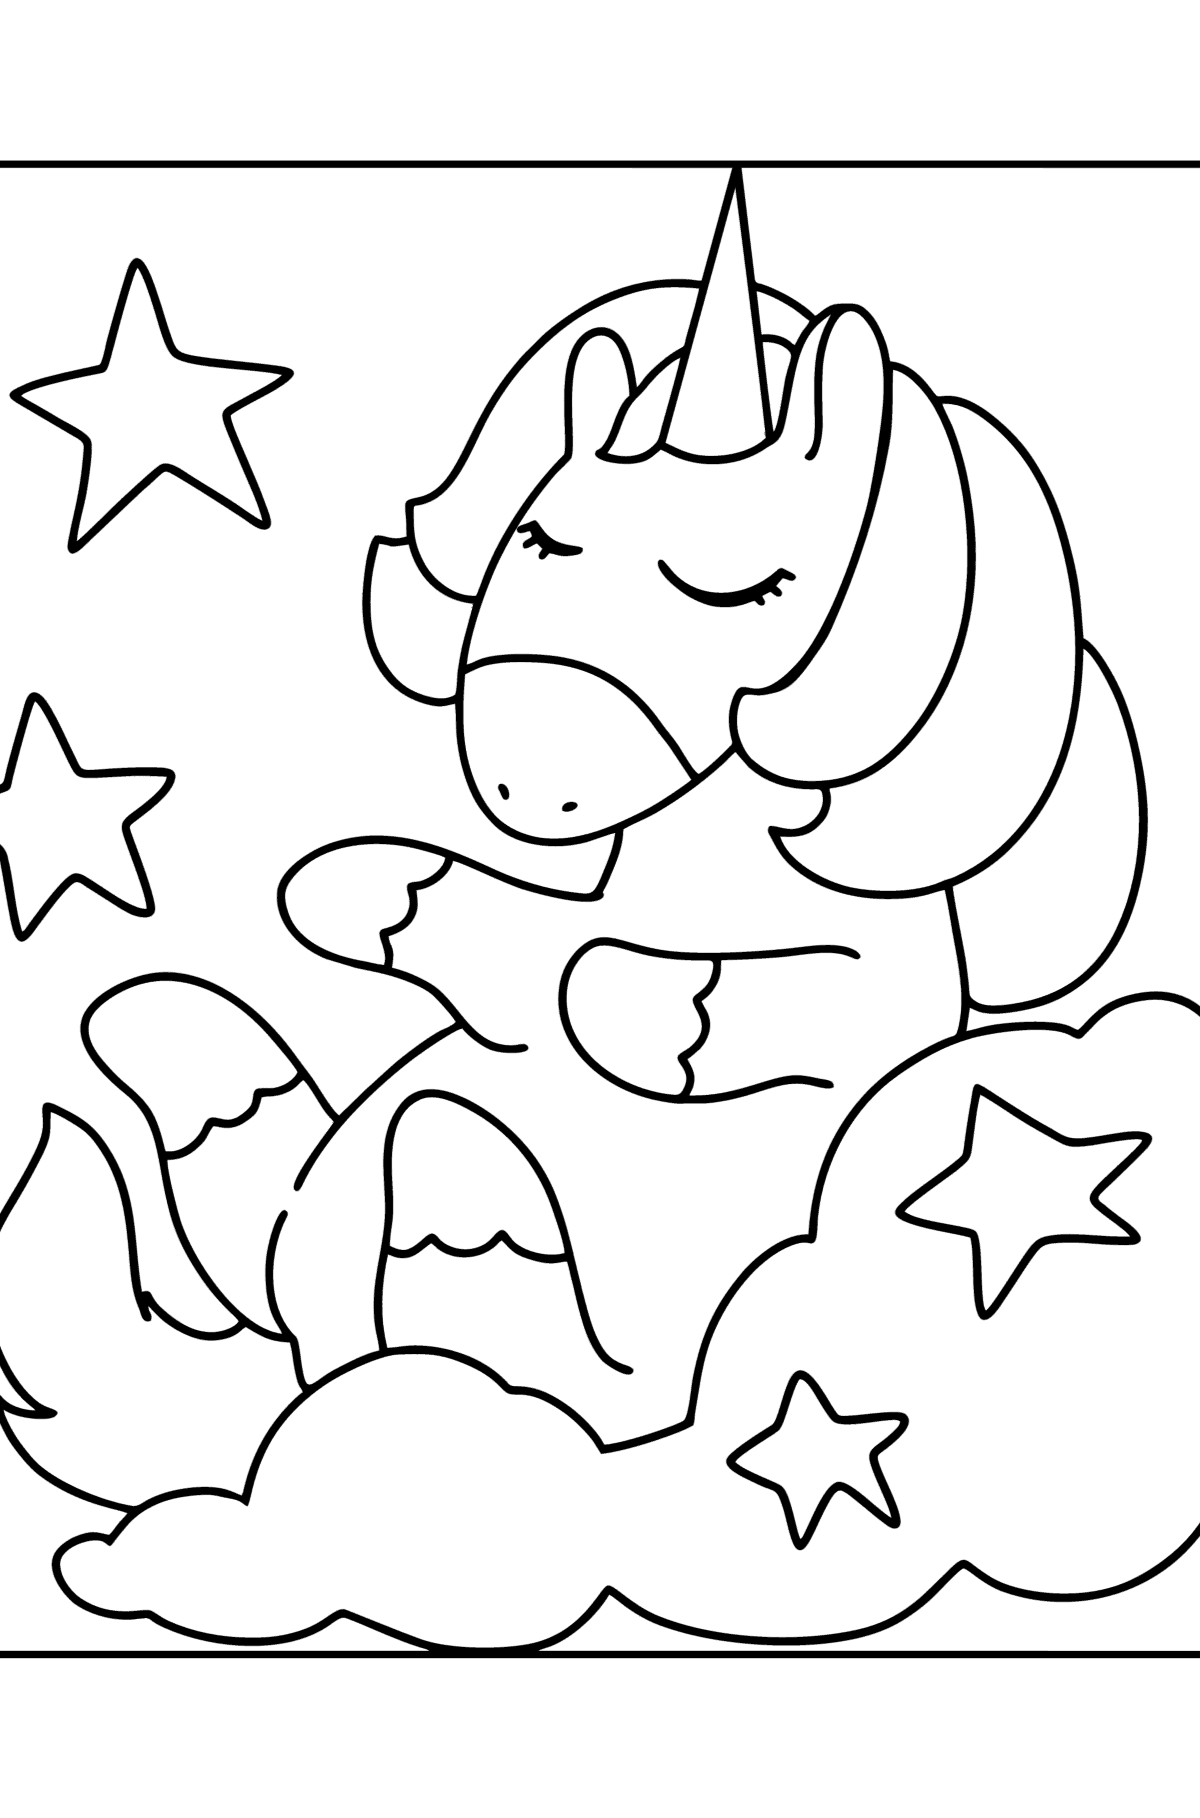 Desen de colorat unicorn amuzant - Desene de colorat pentru copii